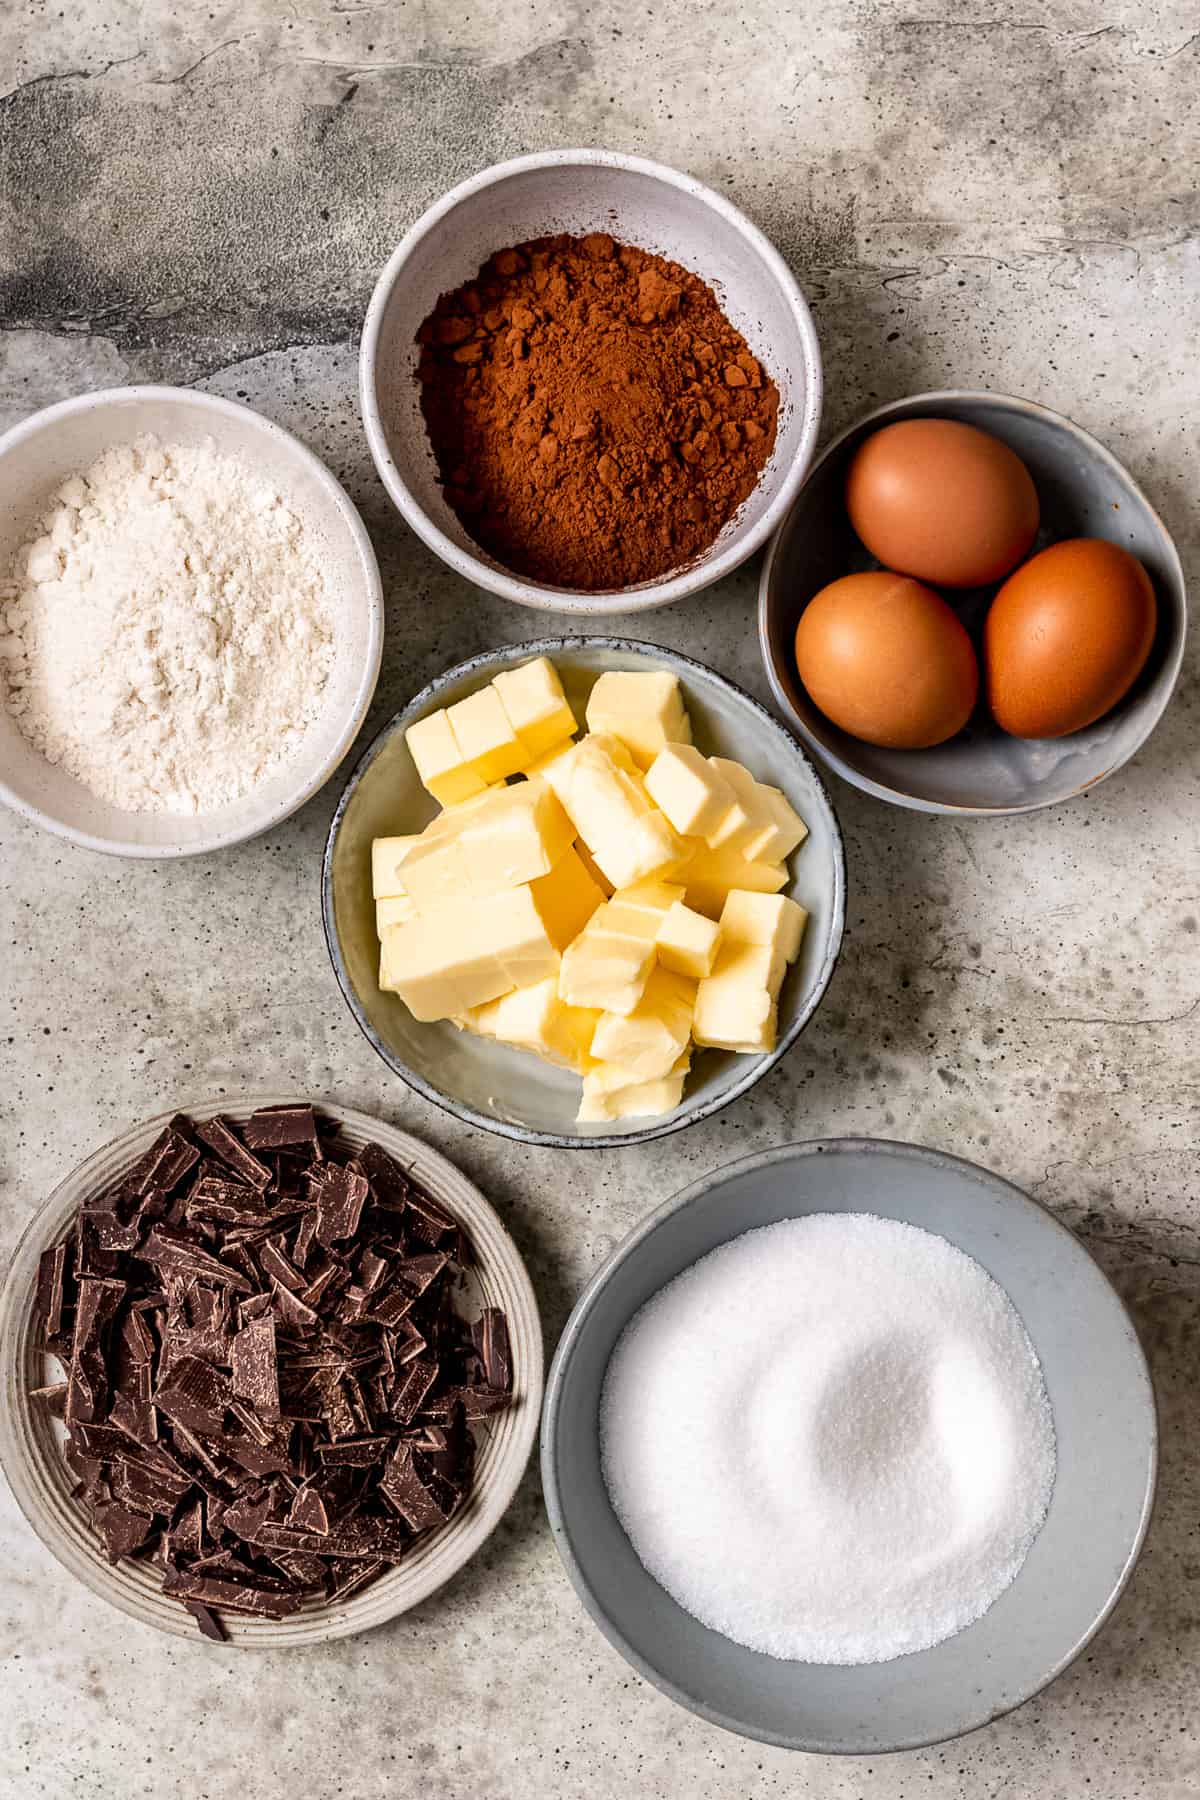 Ingredients for dark chocolate brownies.